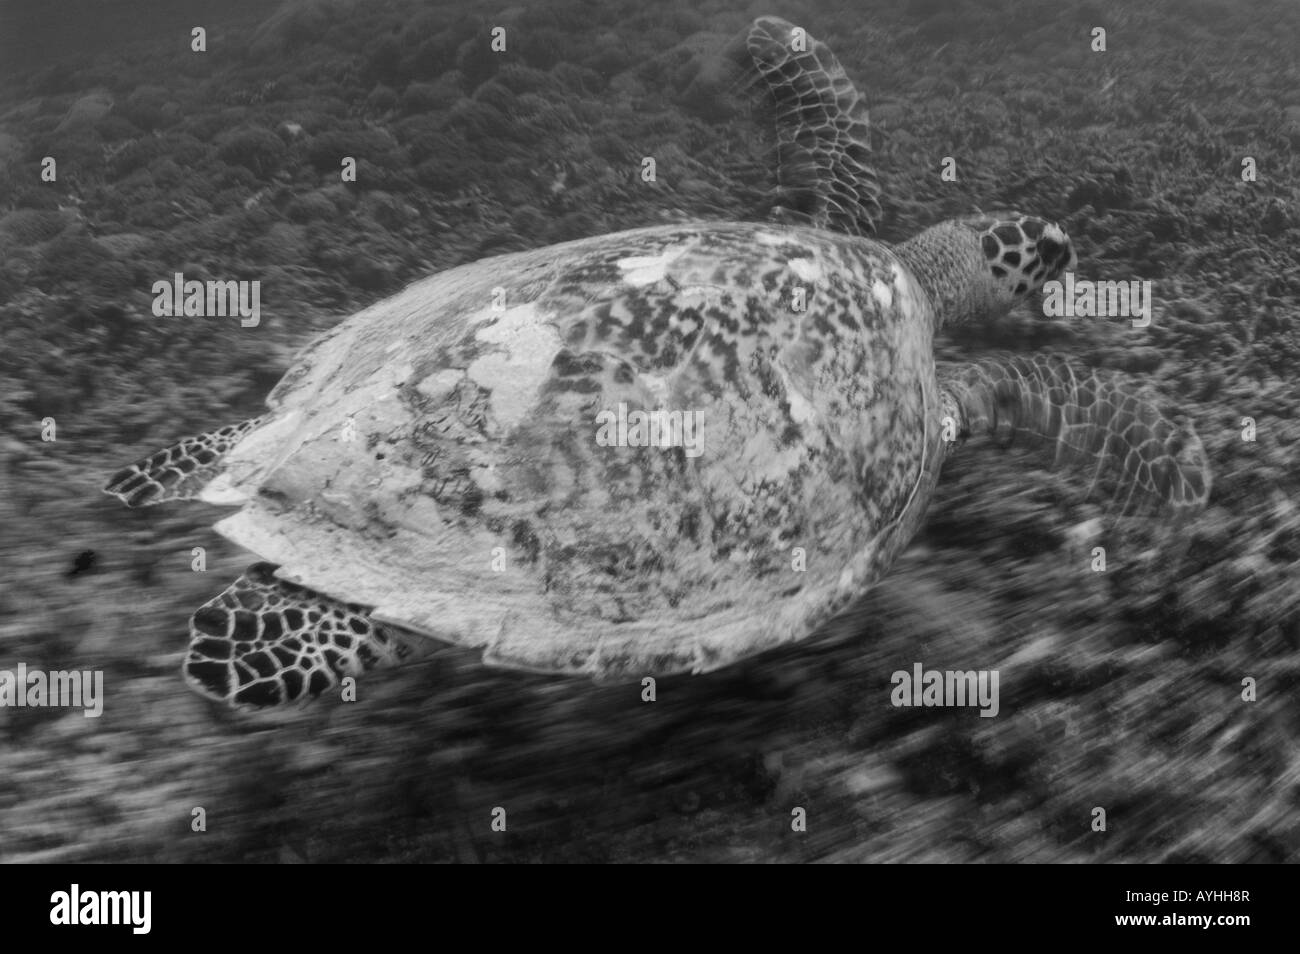 Tartaruga embricata sulla barriera corallina Eretmochelys imbricata in bianco e nero e le specie in via di estinzione Gili Trawangan Lombok Indonesia Foto Stock